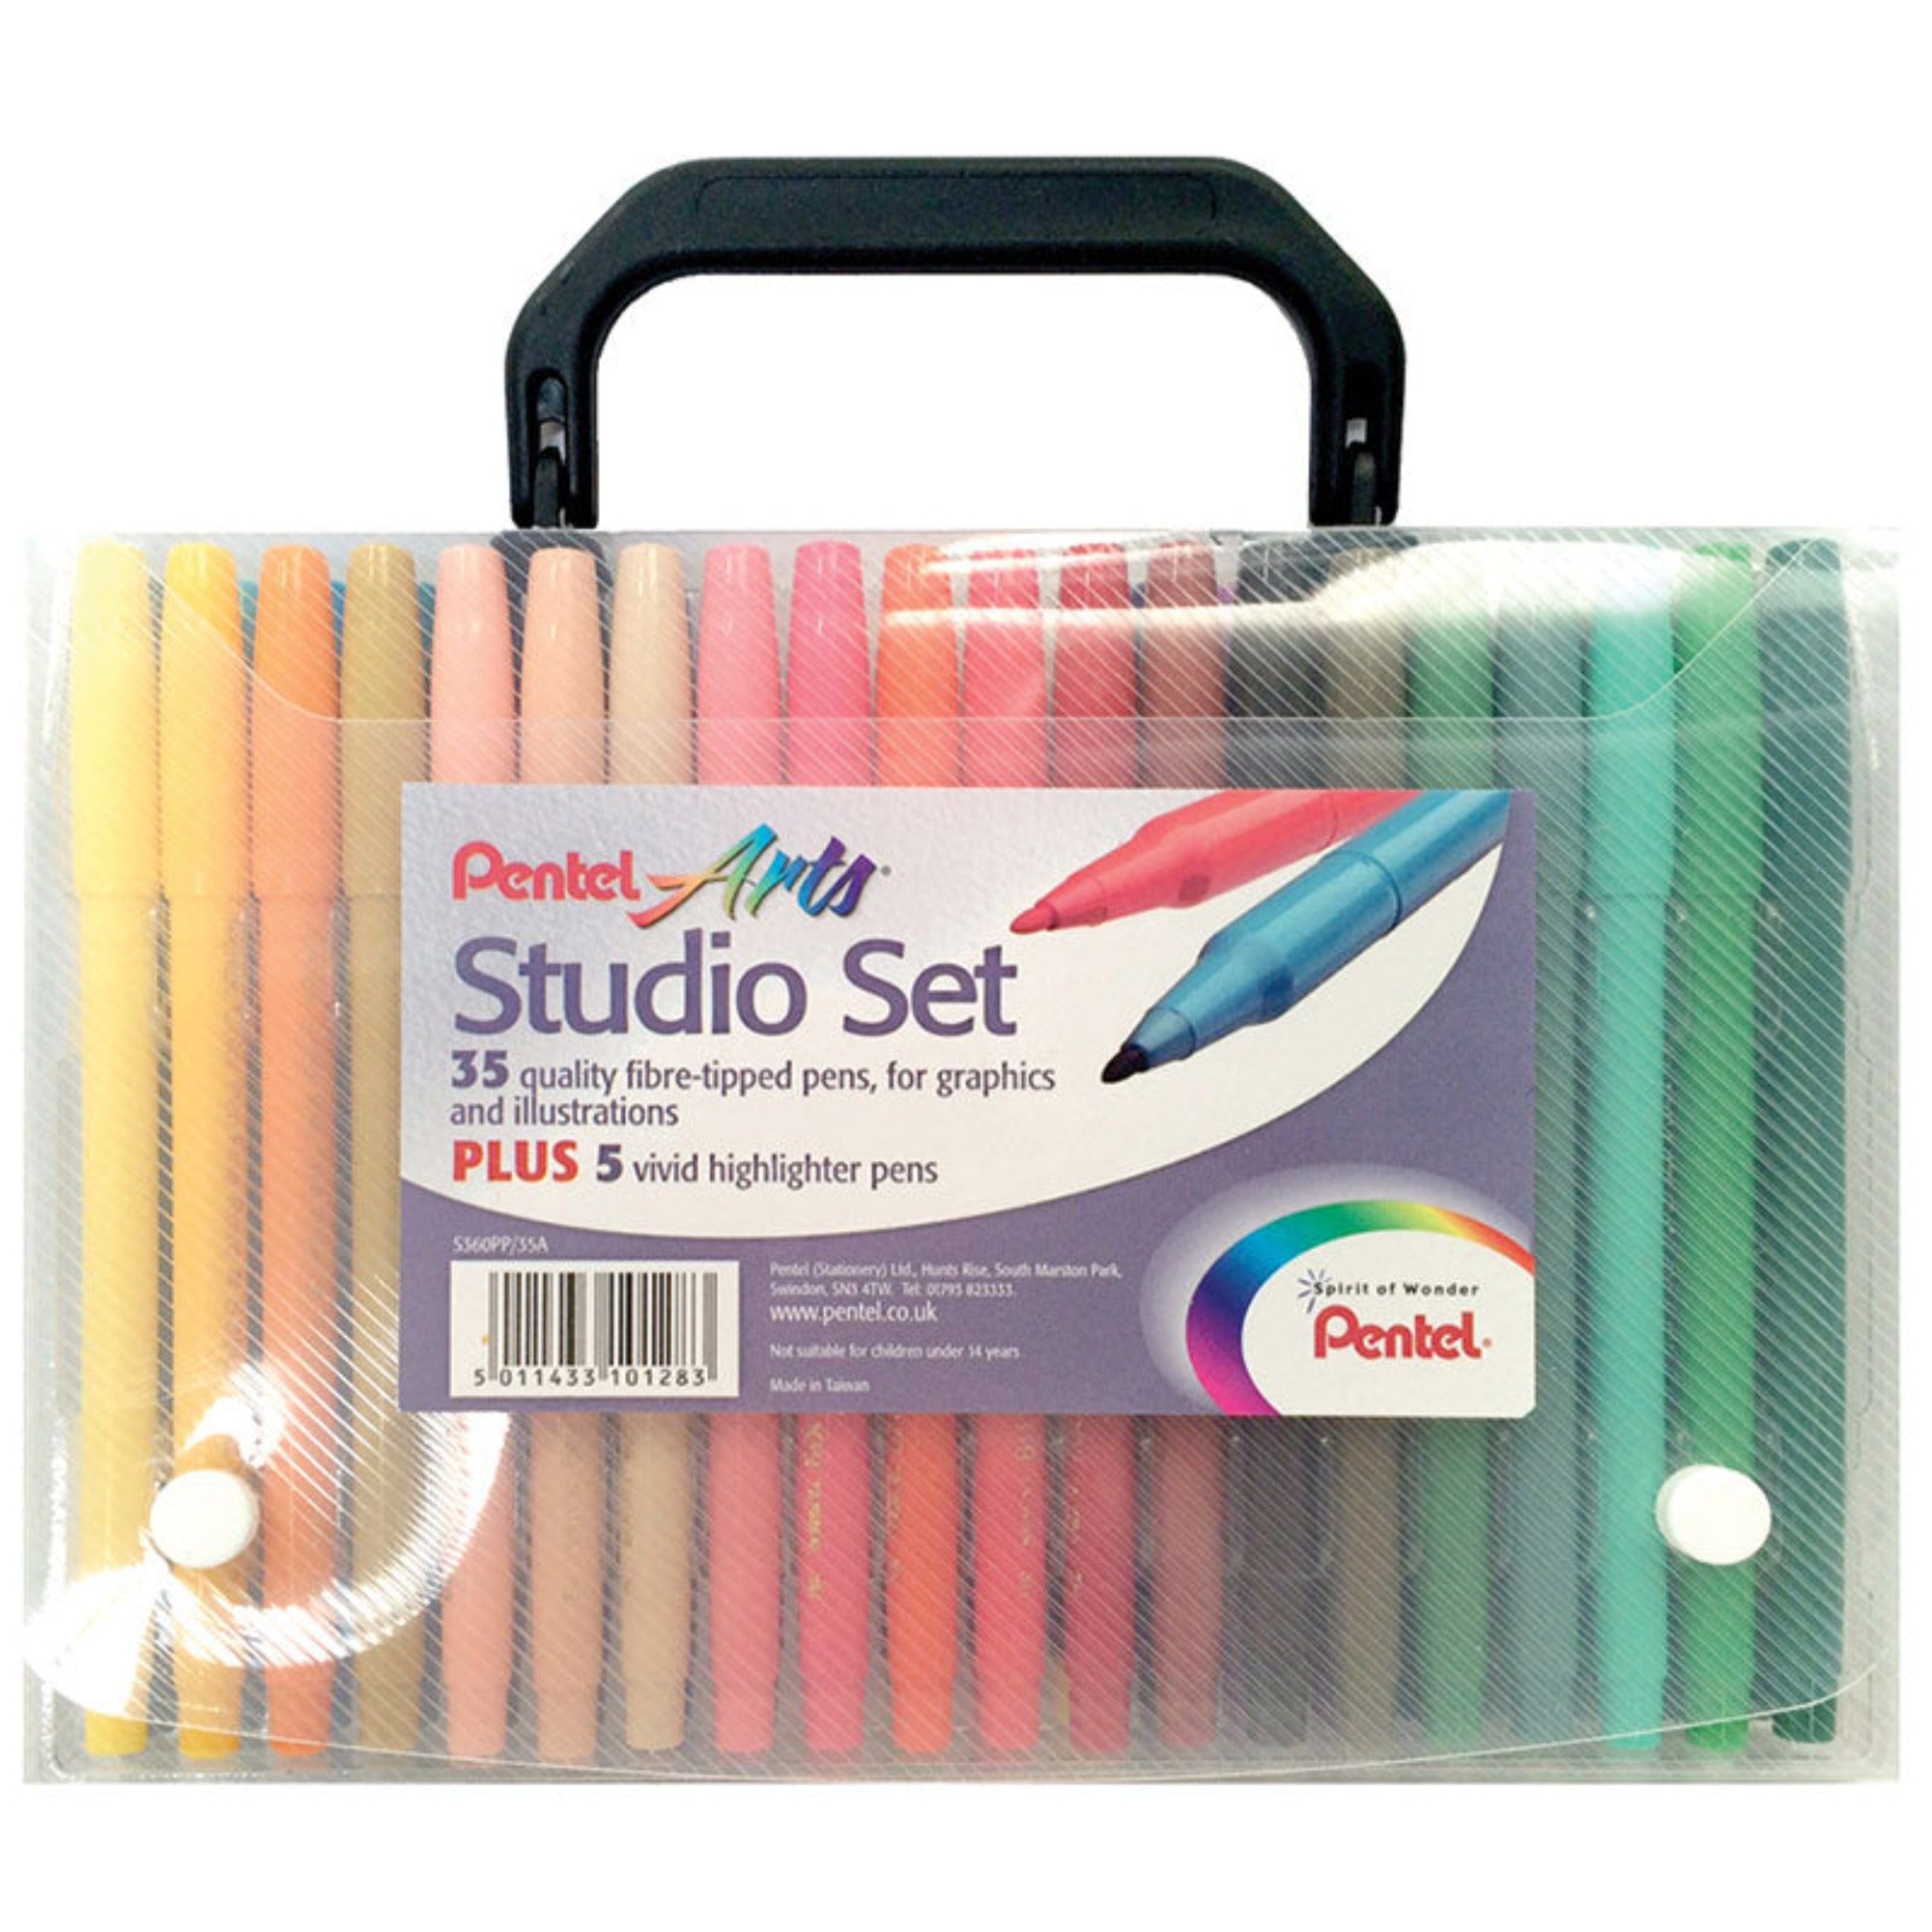 Pentel Arts STUDIO Fibre-Tipped Pens - Set of 35